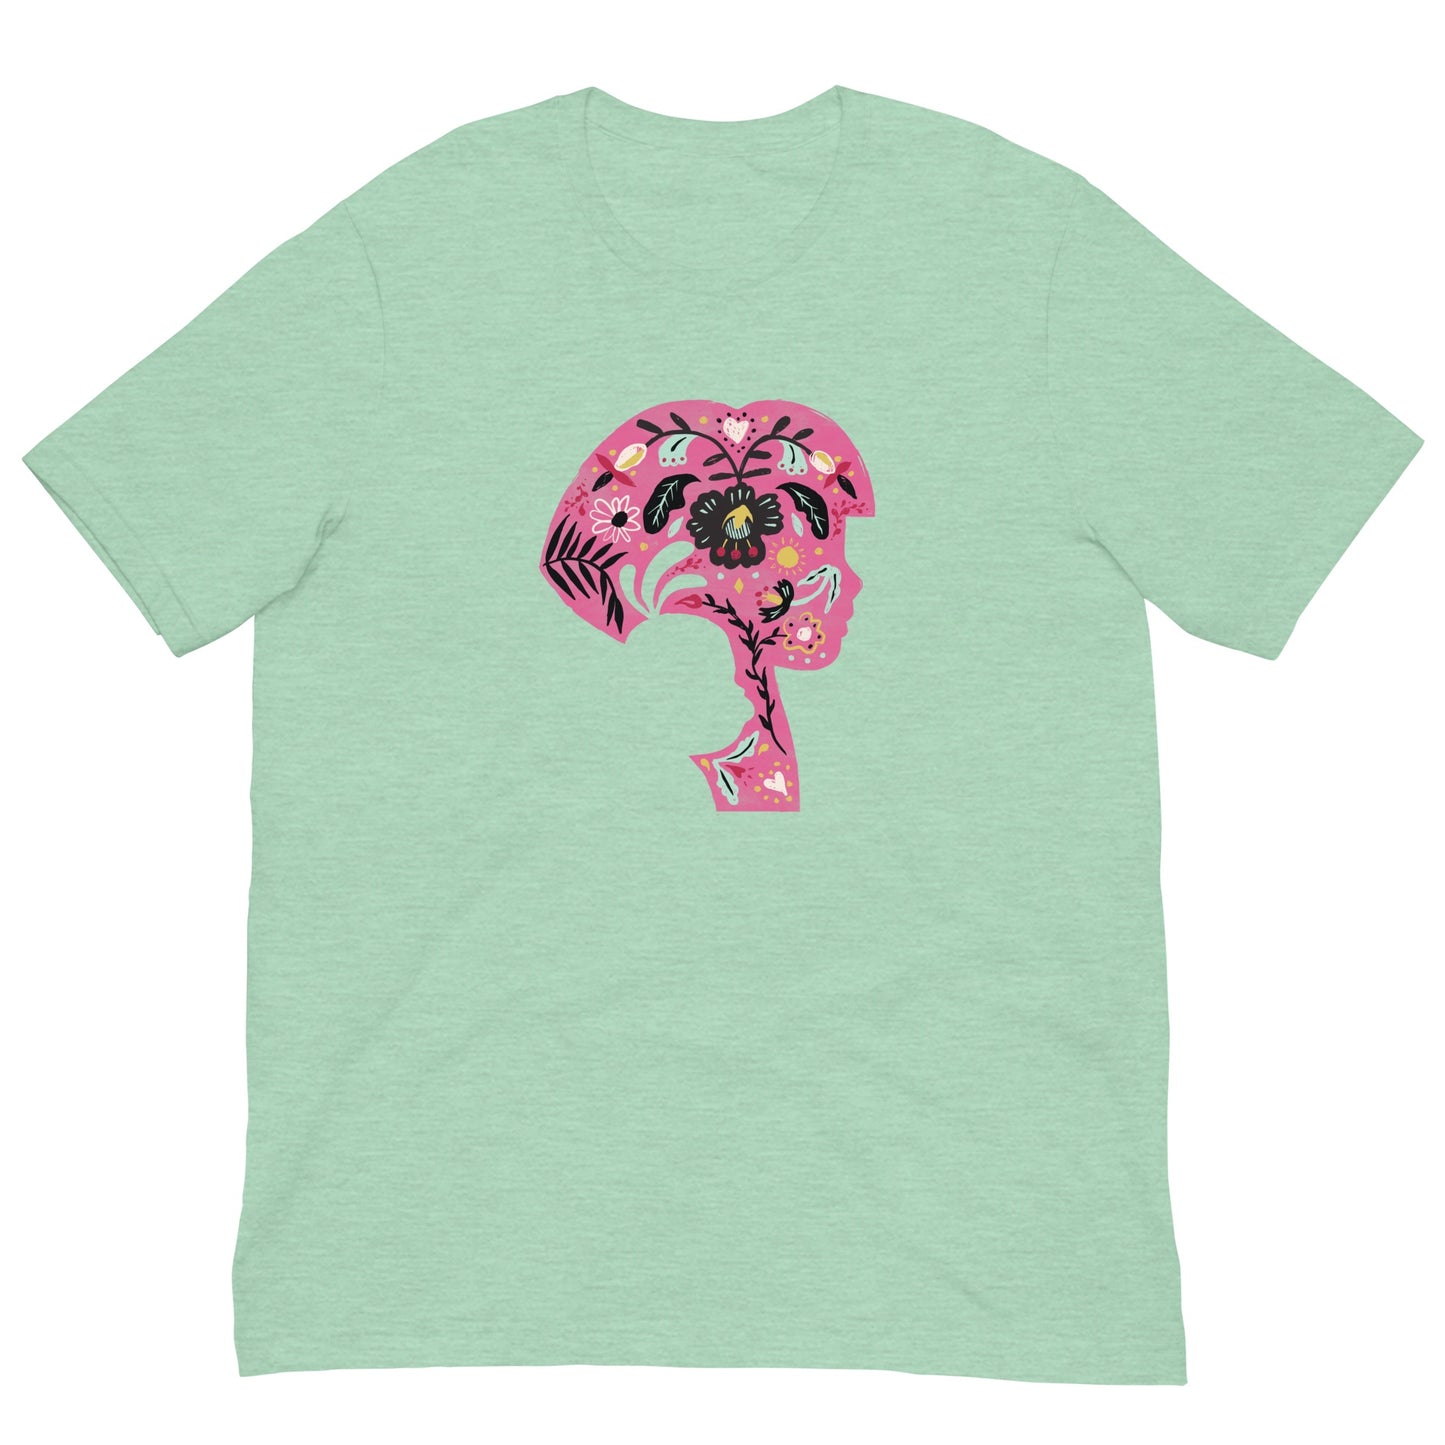 Dora the Explorer Floral Design Adult Short Sleeve T-Shirt